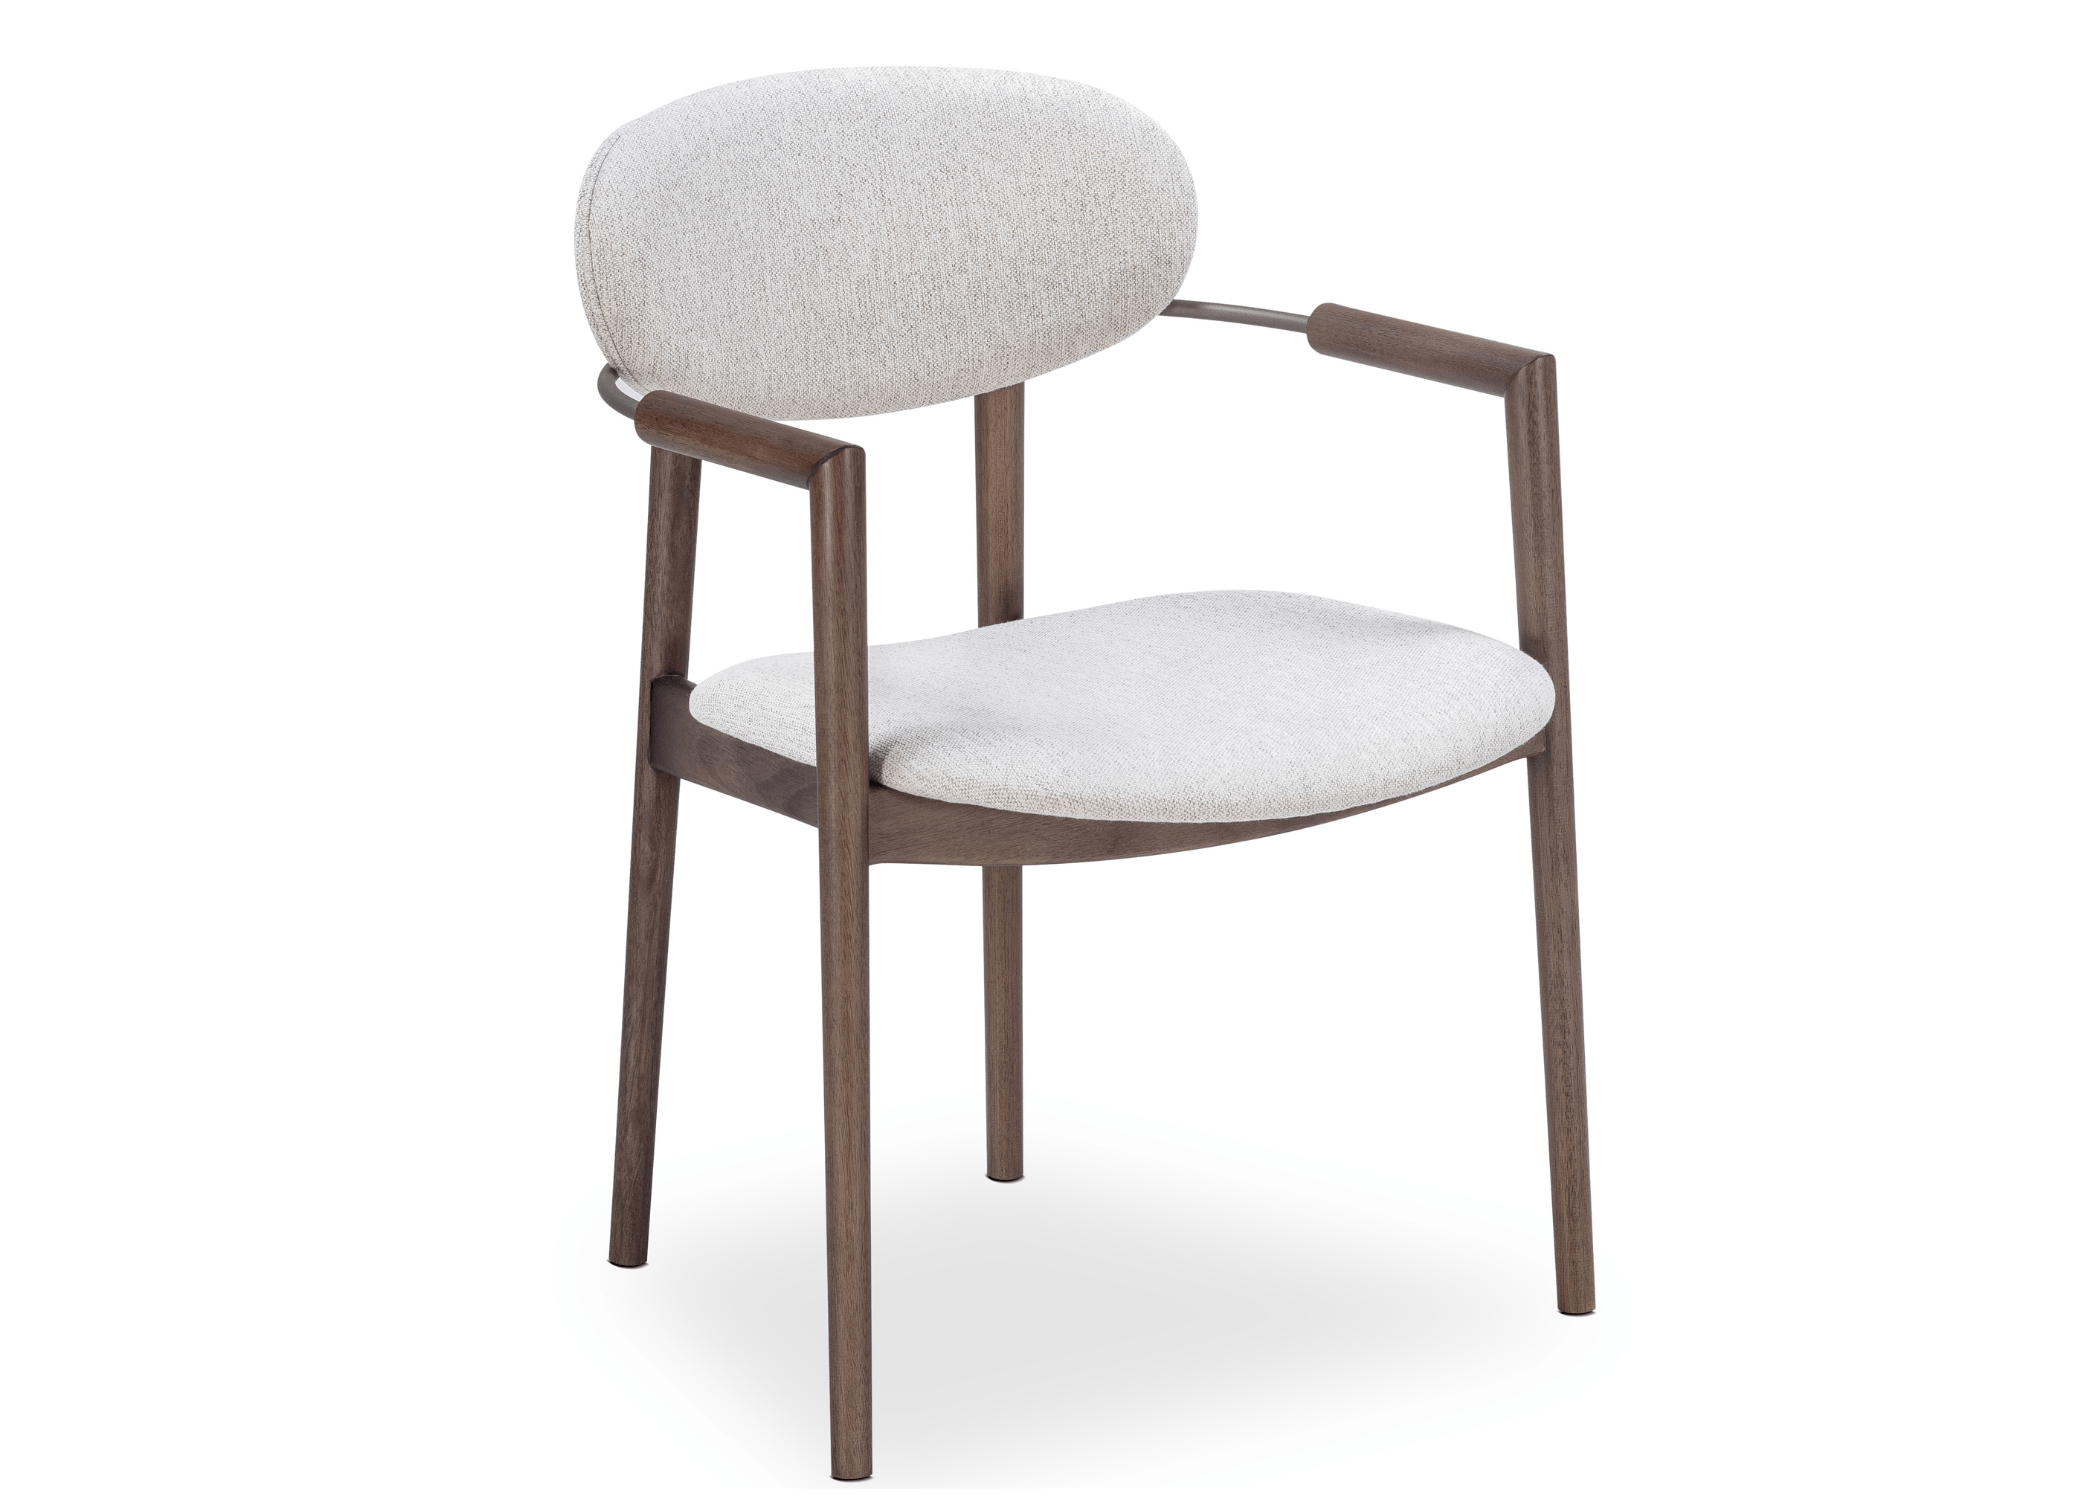 Cadeira Arthemis: design ergonômico e sólida base em madeira.